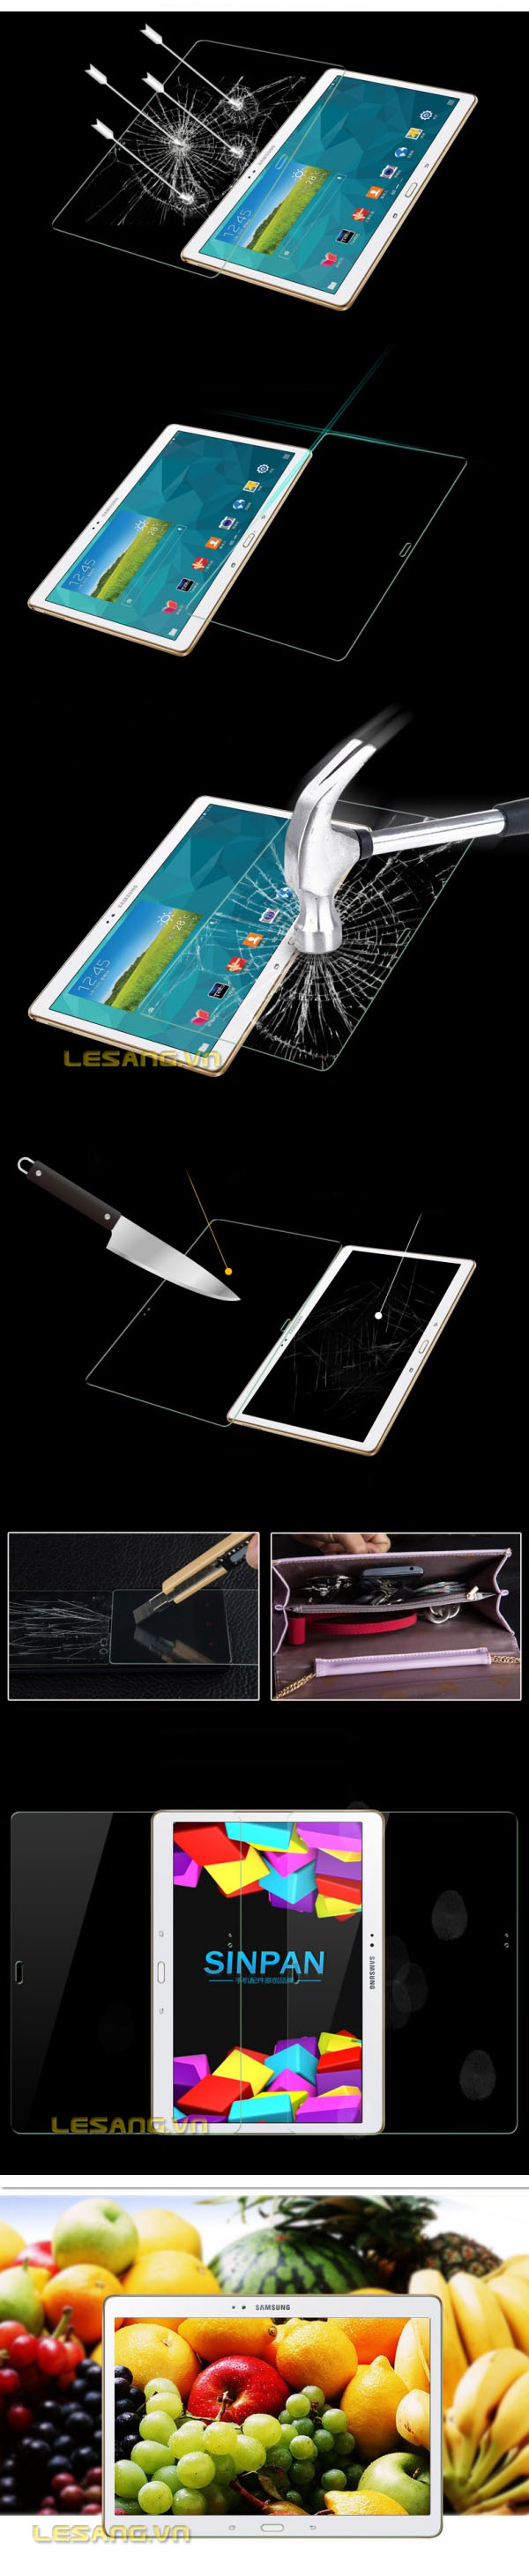 Kính cường lực Galaxy Tab S 10.5 Max Glass 111111111